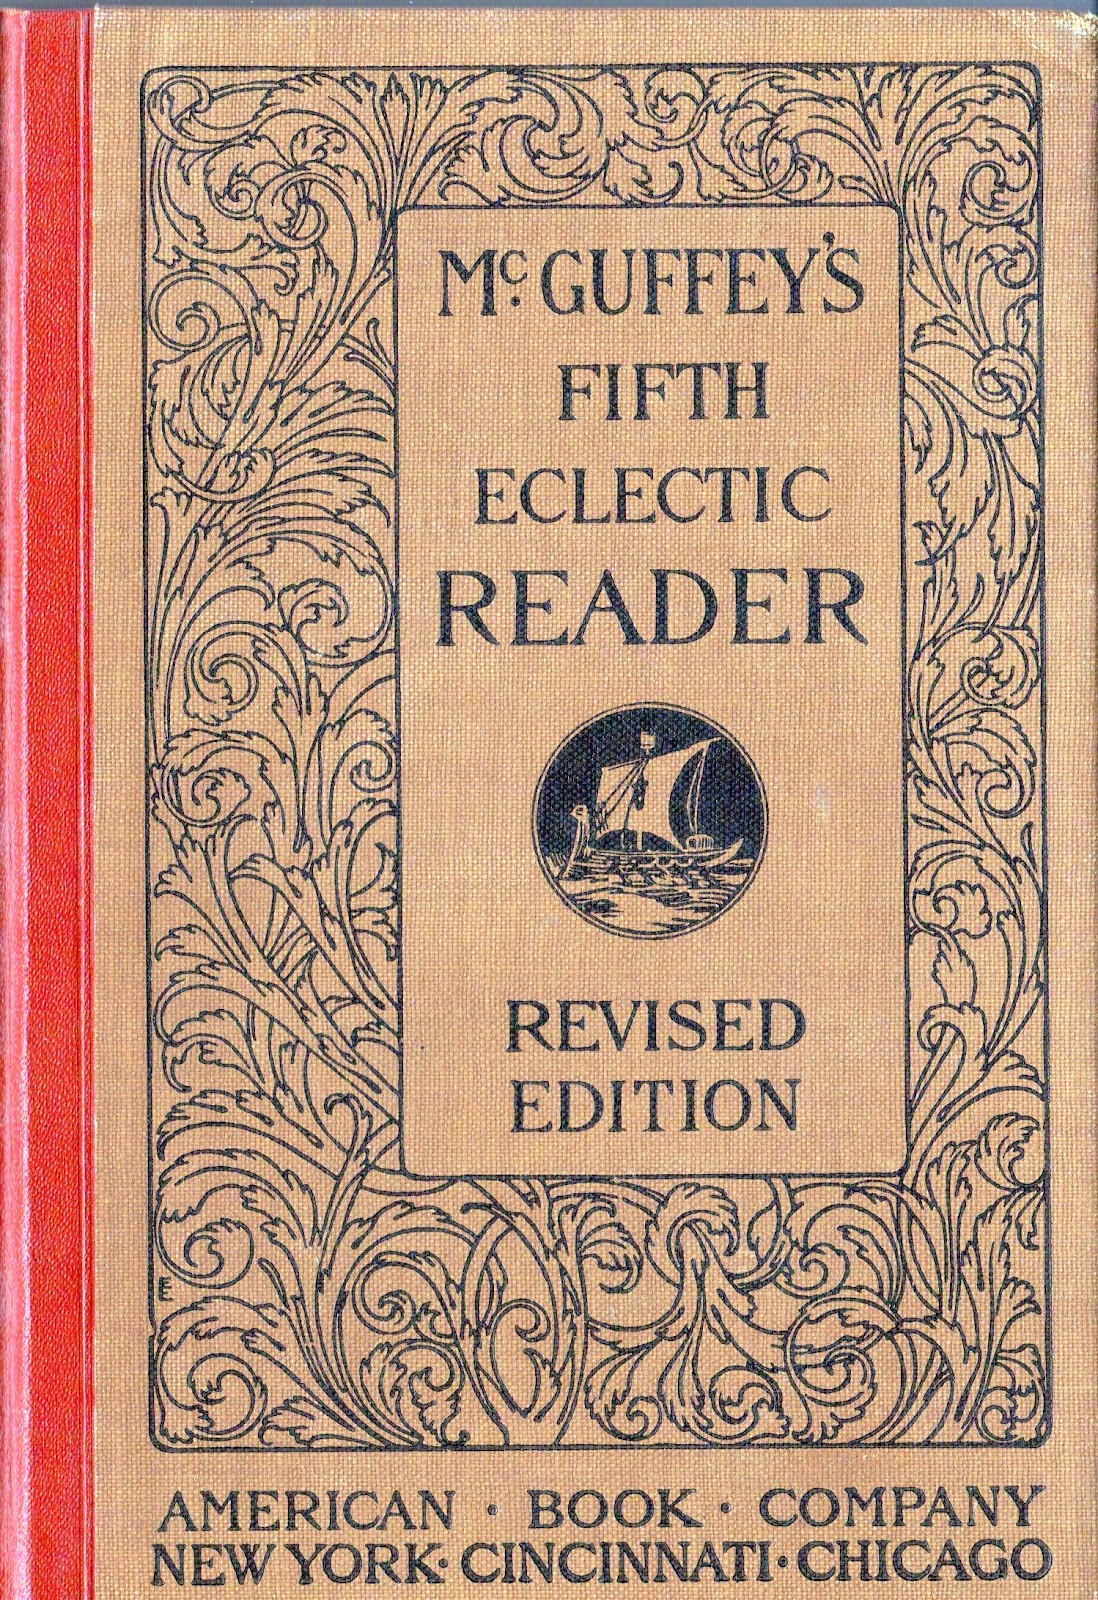 Dawn Reader: McGuffey's Readers